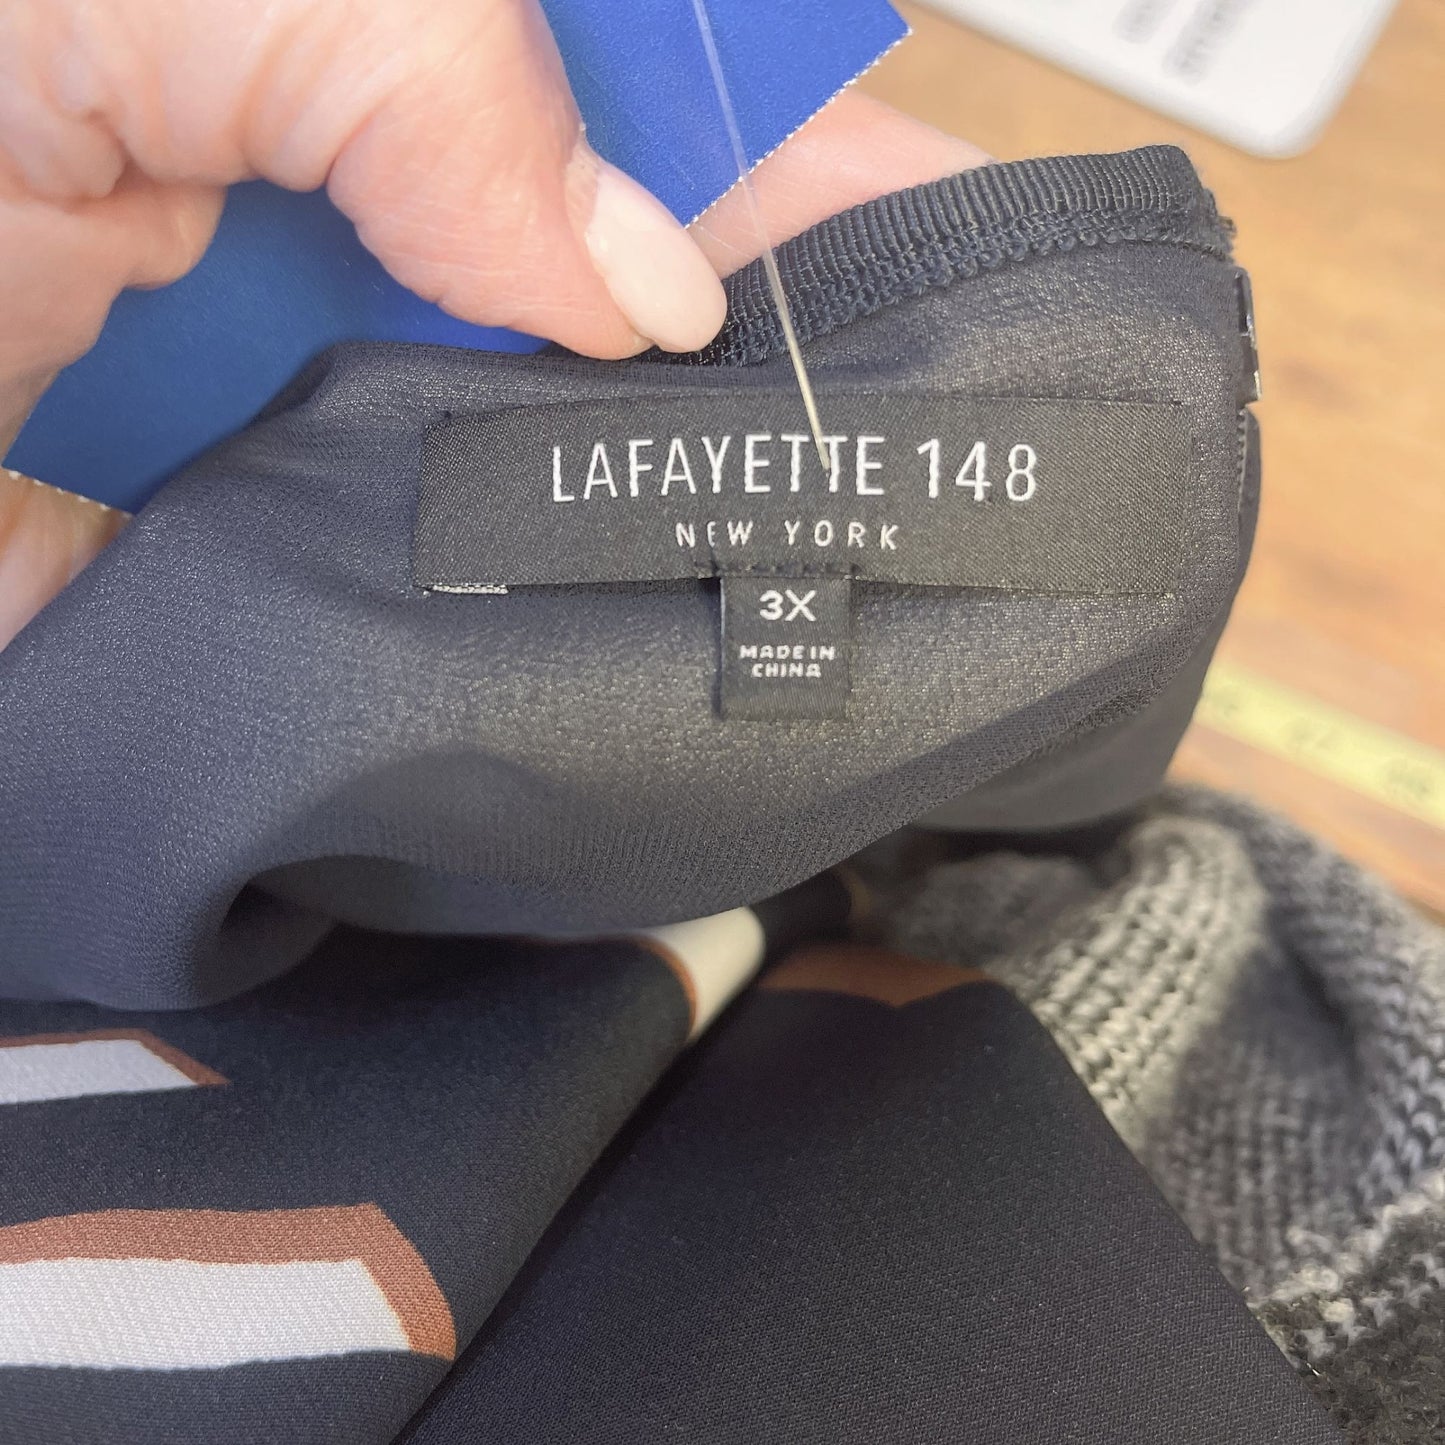 LaFayette 148 Brown Black Grometric Print Shift Dress Size 3X